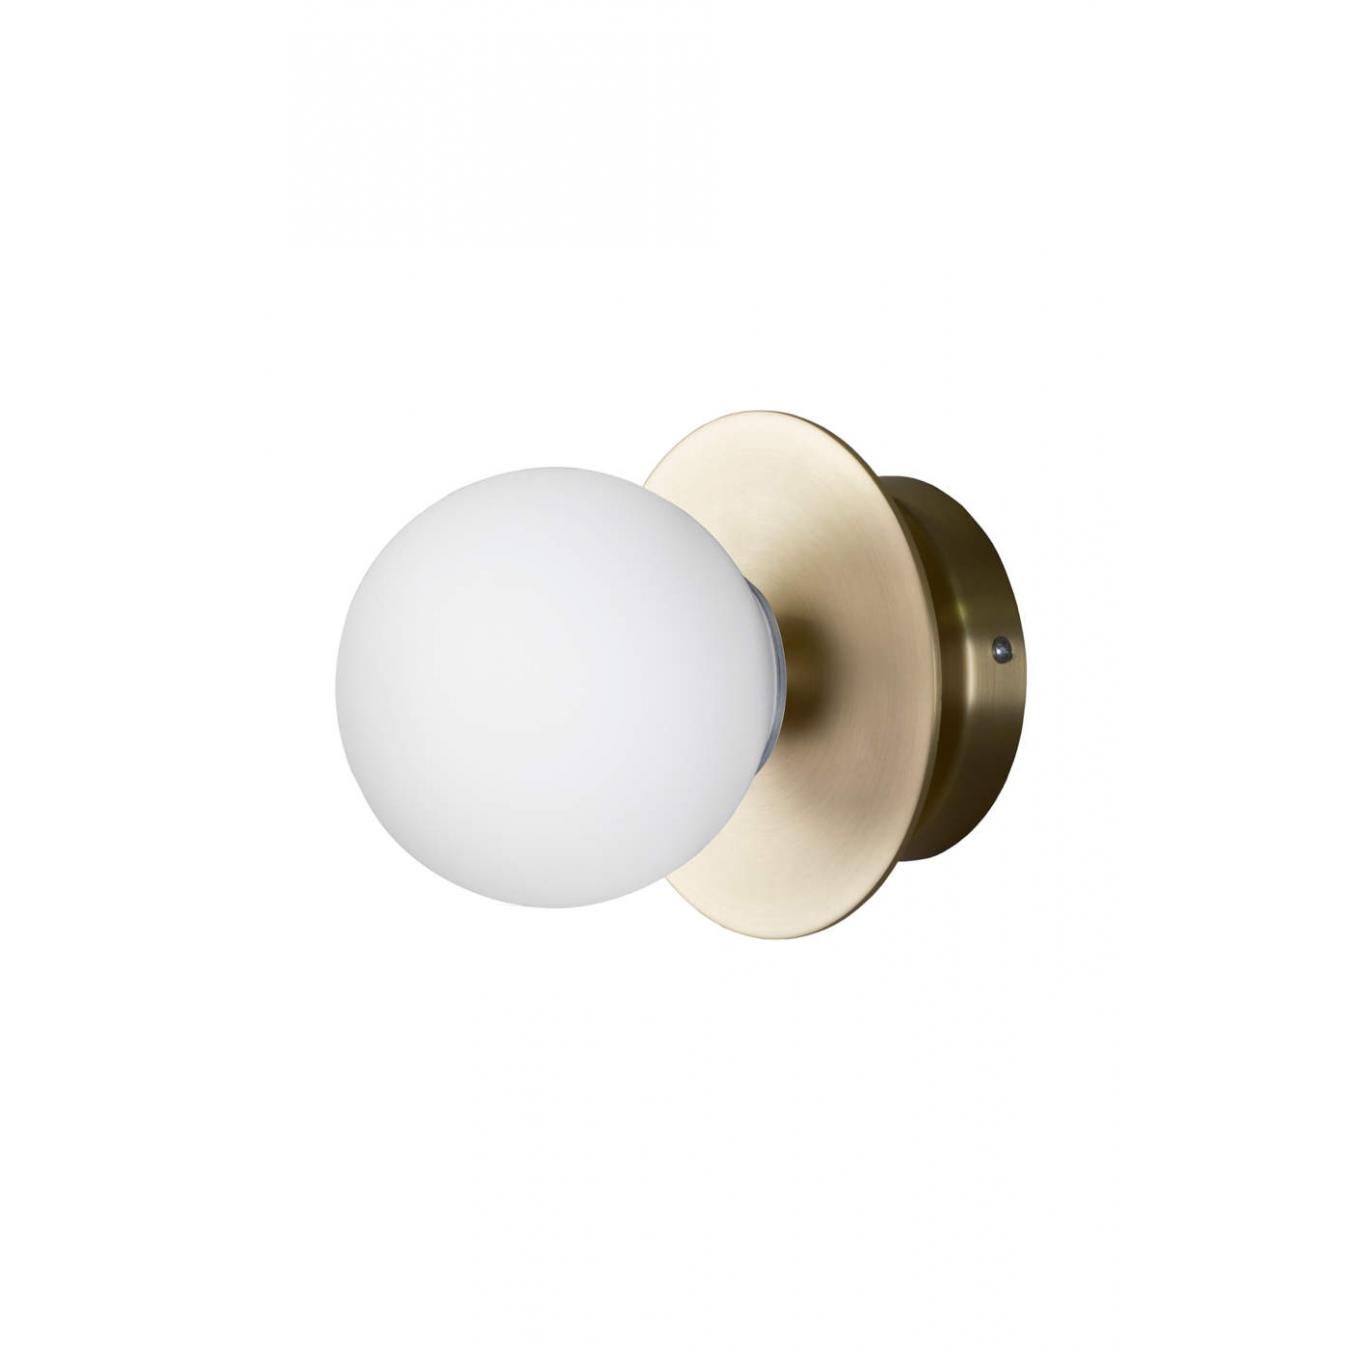 Globen Lighting Art Deco Plafoneer / Wall lamp brass // Art Deco Mennyezeti / Fali lámpa réz